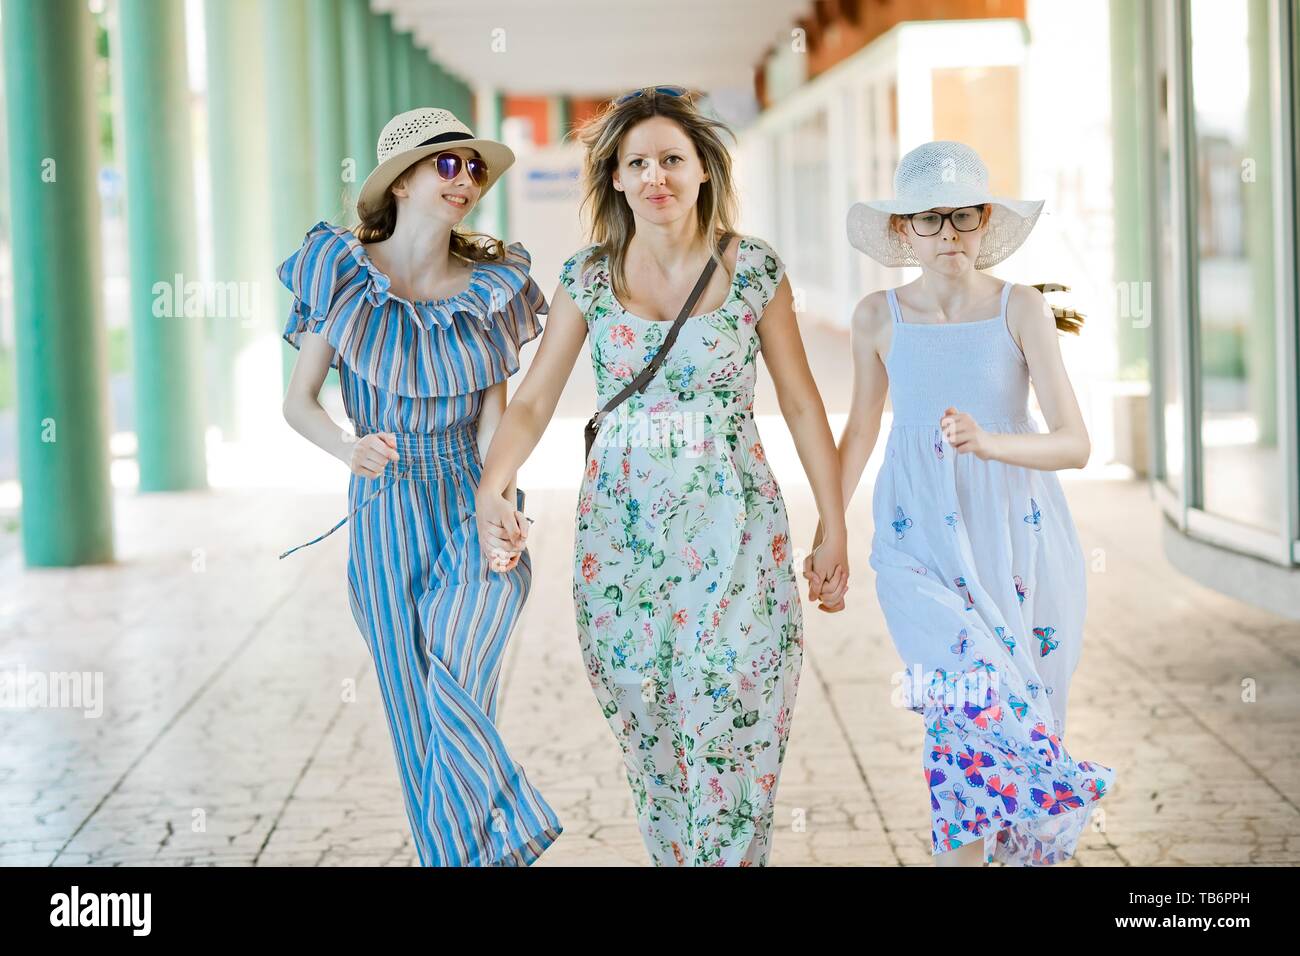 La mère et les deux filles marche main dans la main à colonnade avec piliers vert Banque D'Images